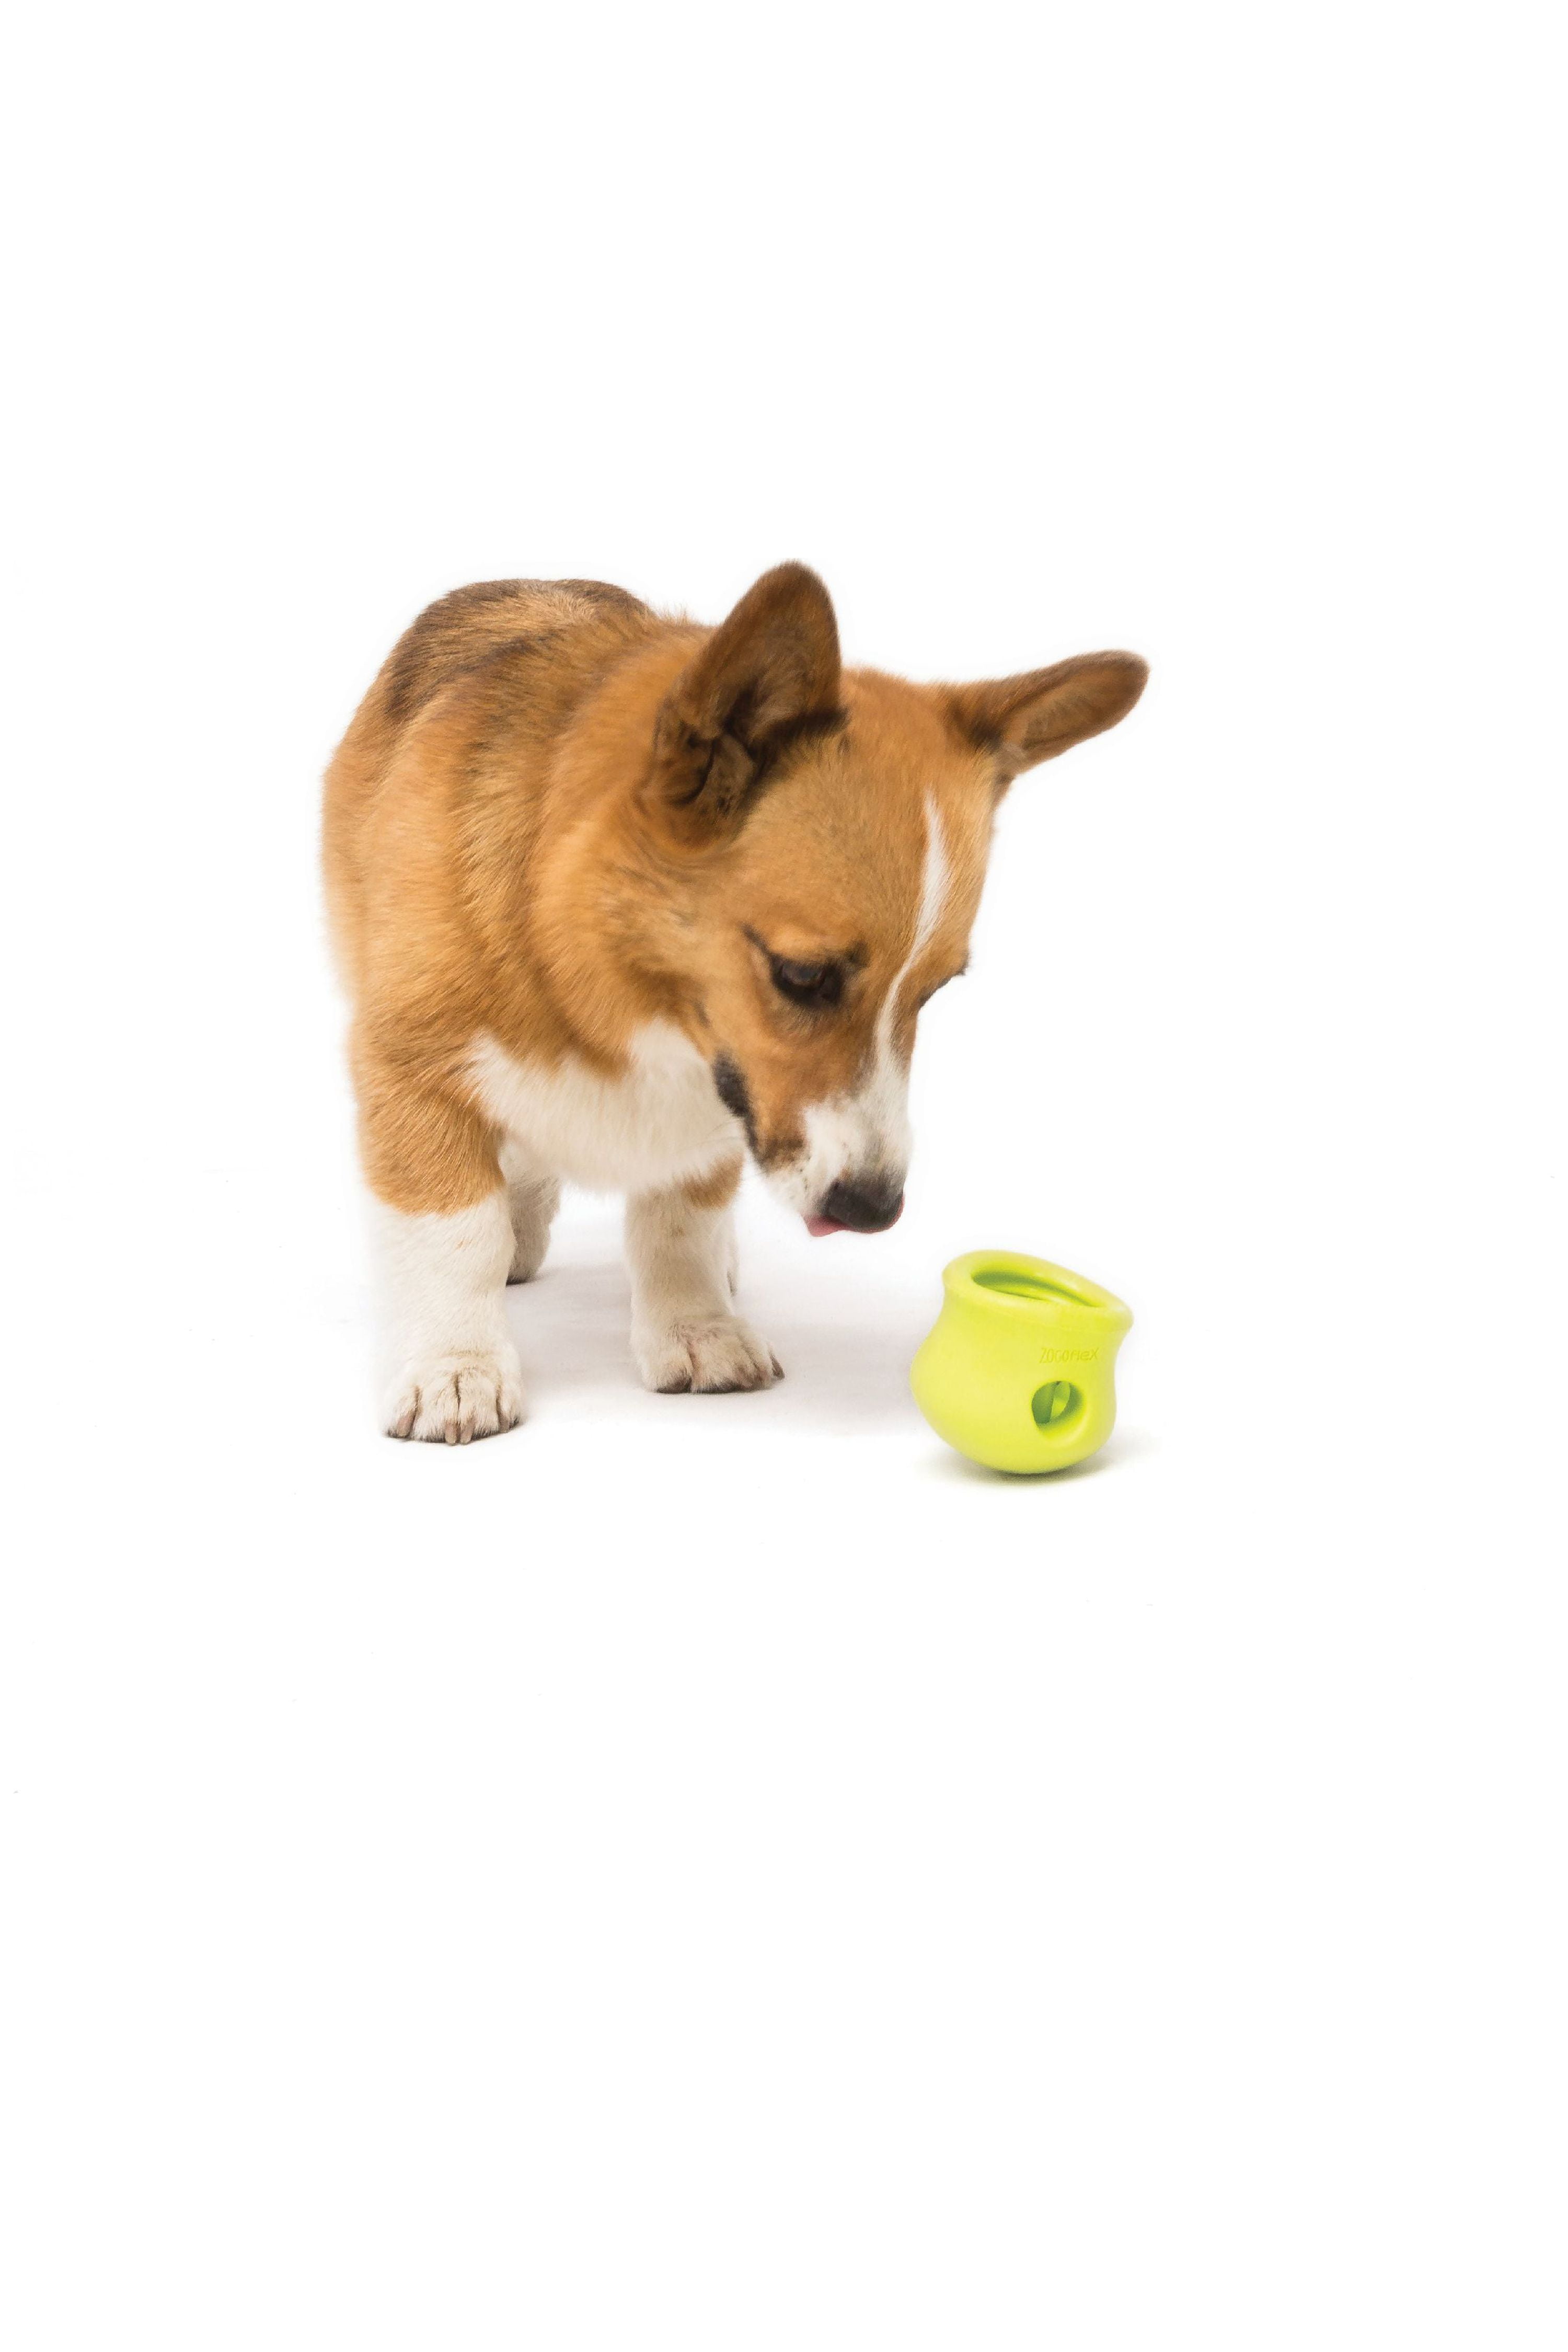 West Paw Zogoflex Dog Toys | Toppl Tangerine Extra Large (XL)